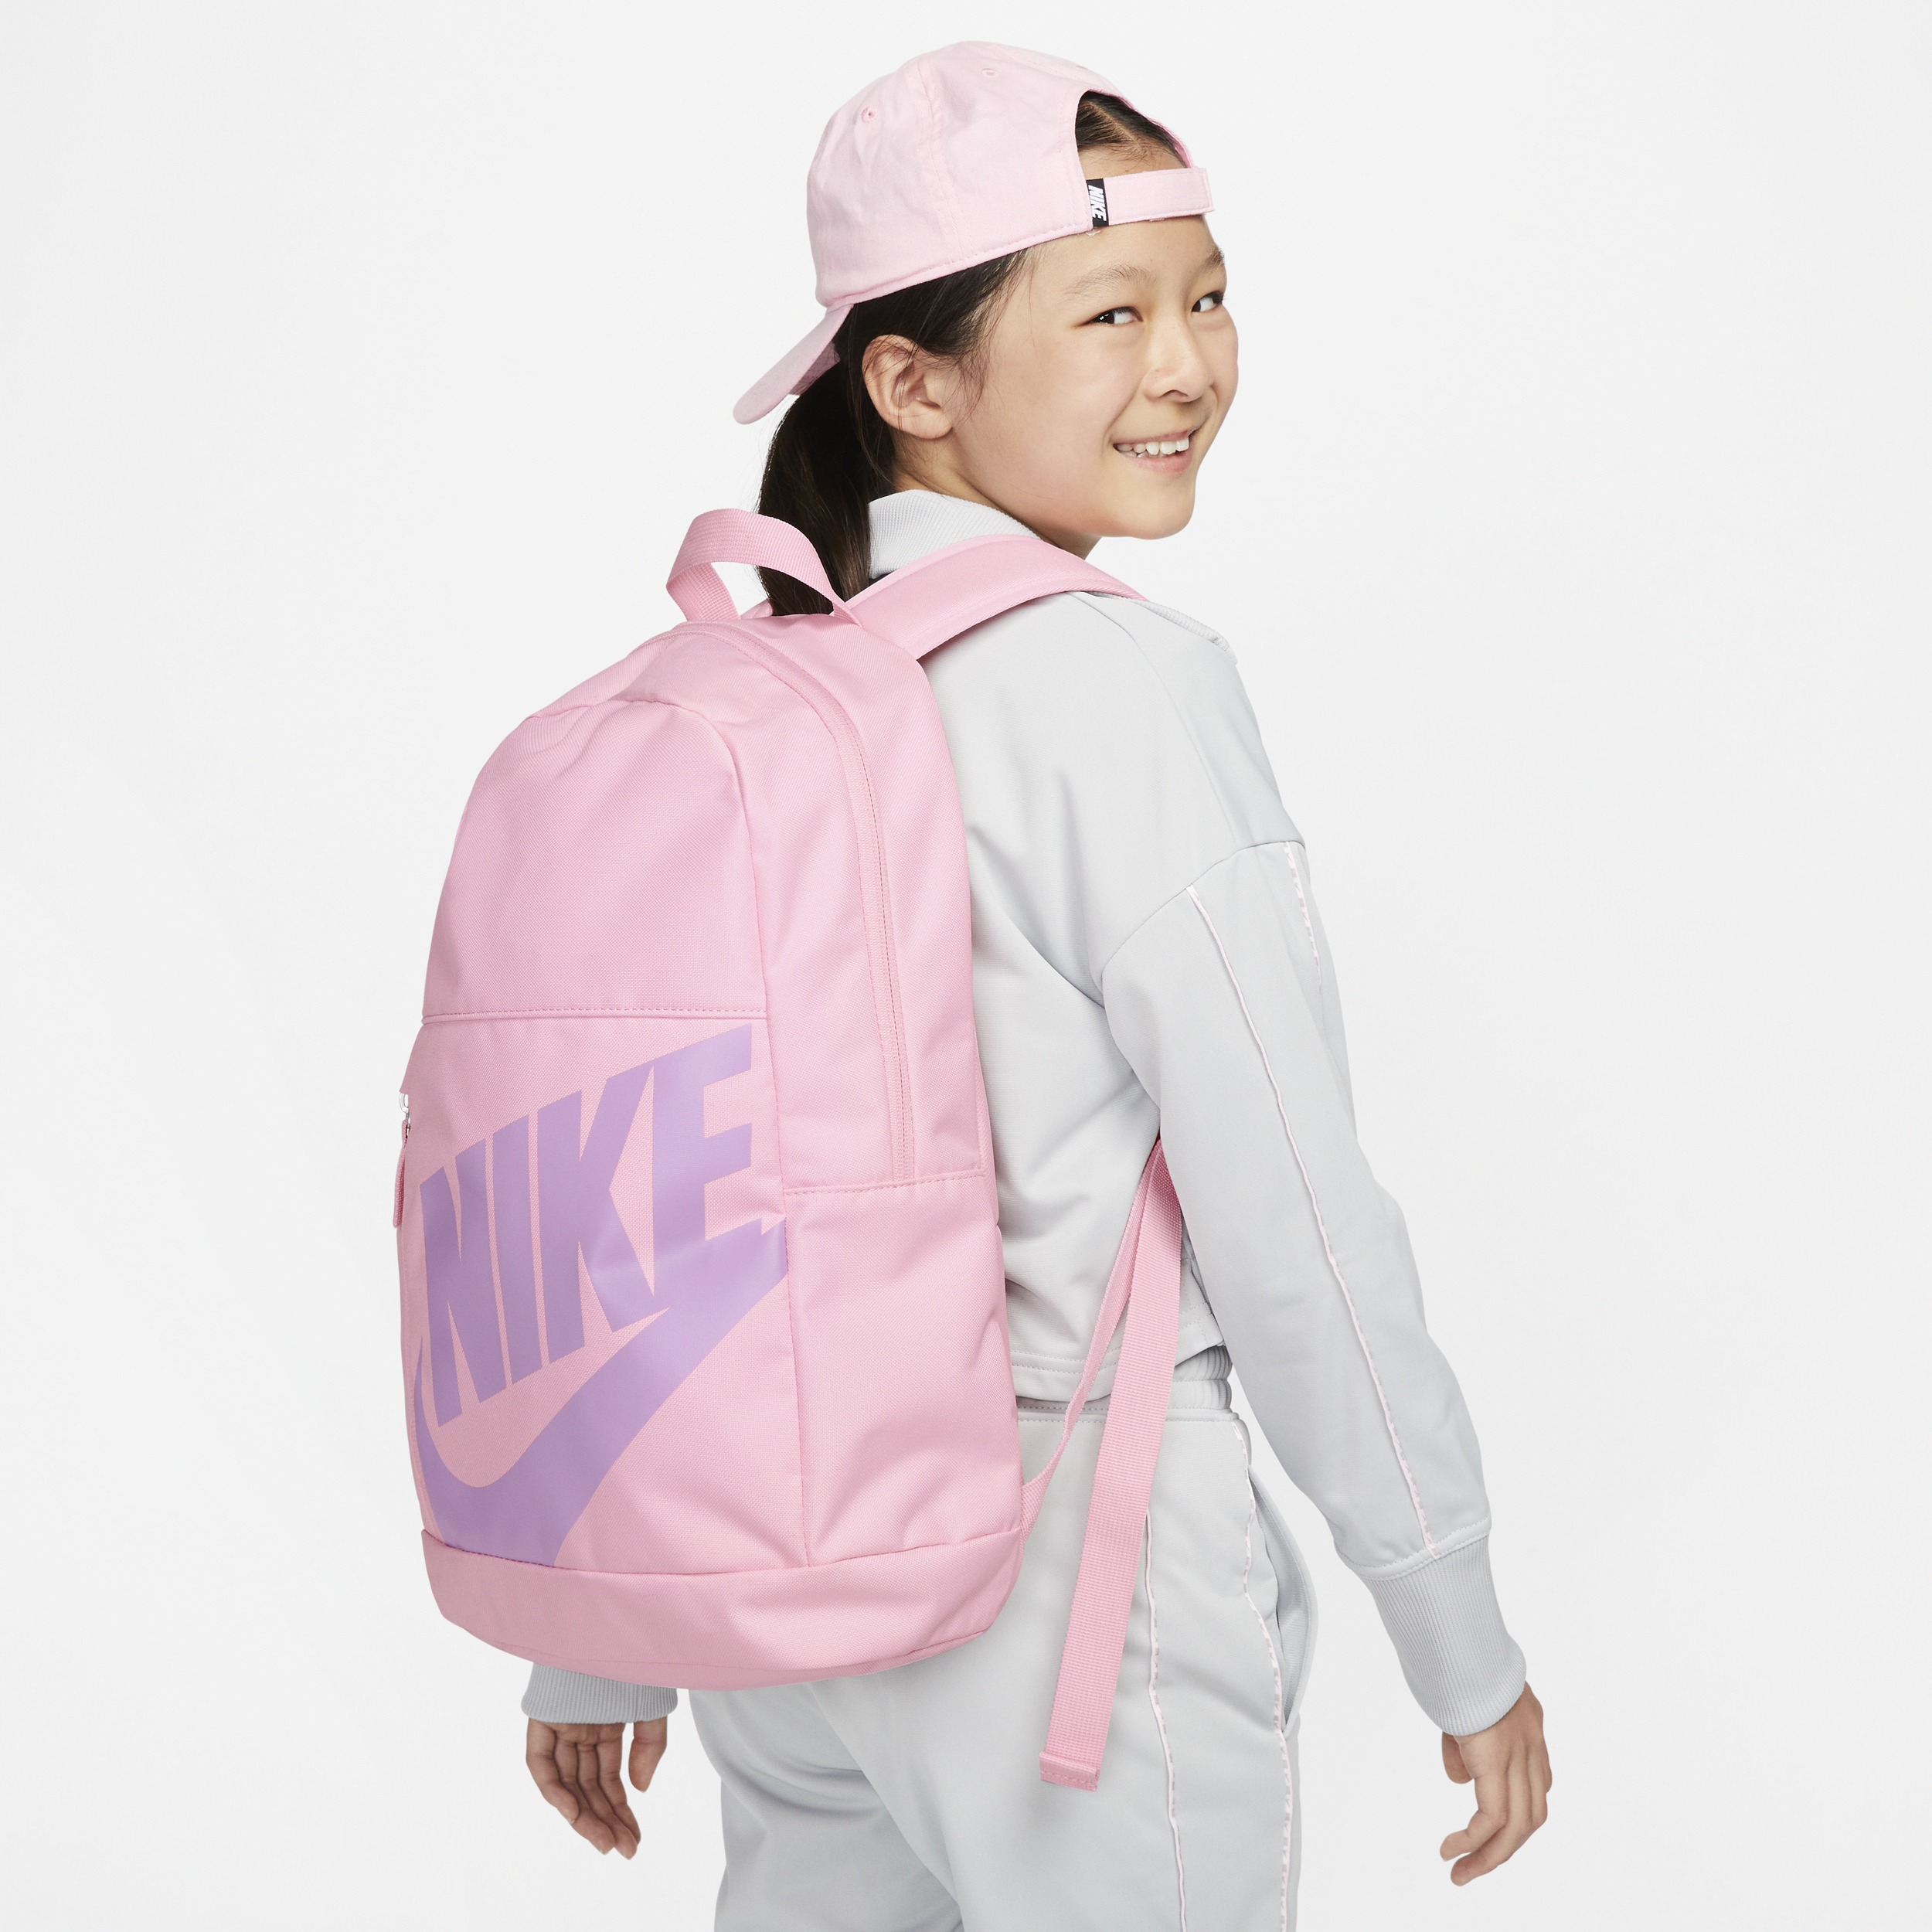 Nike Elemental Kids' Backpack (20l) In Brown